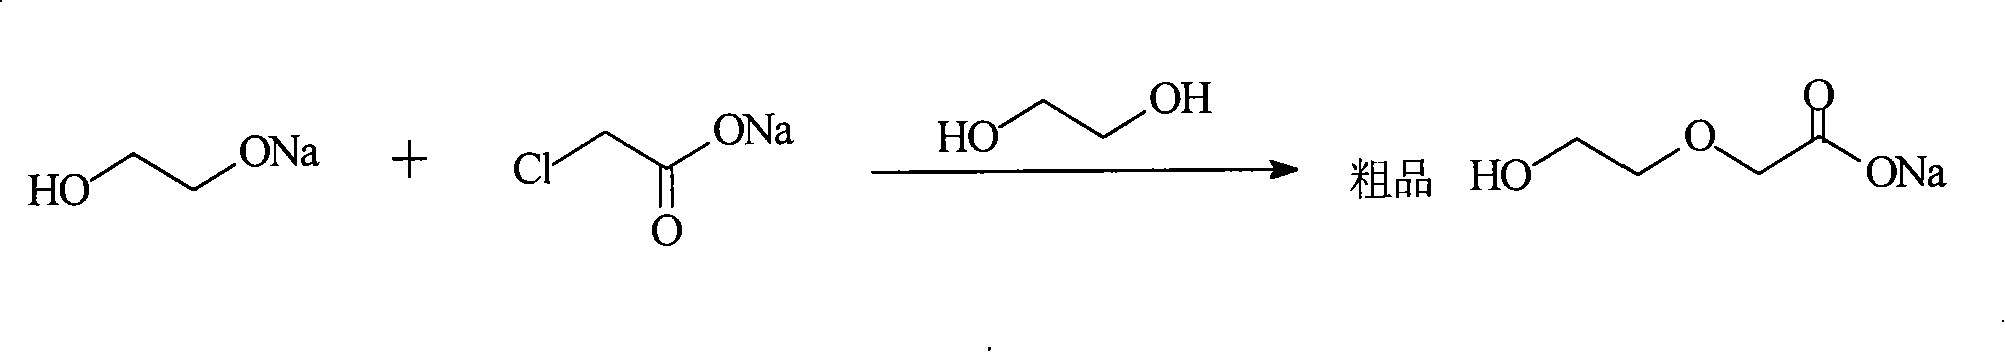 Method for synthesizing 1,4-dioxane-2-ketone by ethylene glycol